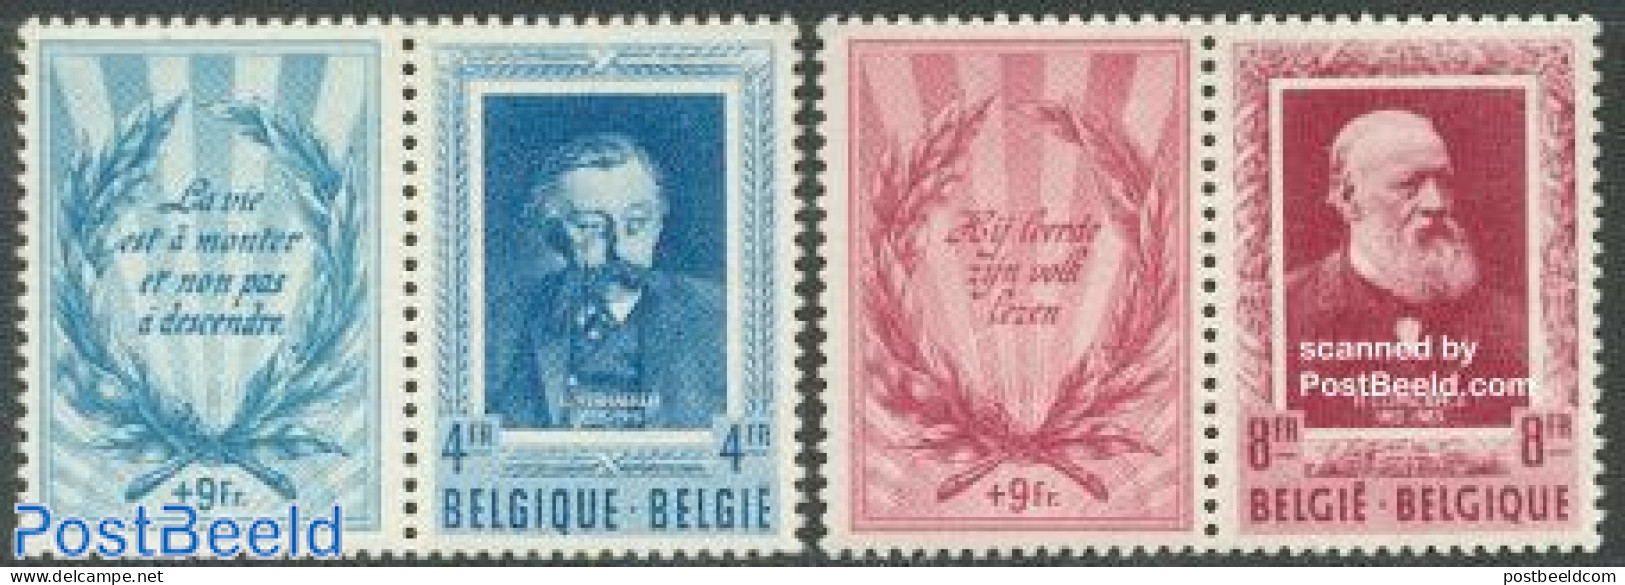 Belgium 1952 Culture 2v+tabs, Unused (hinged), Art - Authors - Unused Stamps